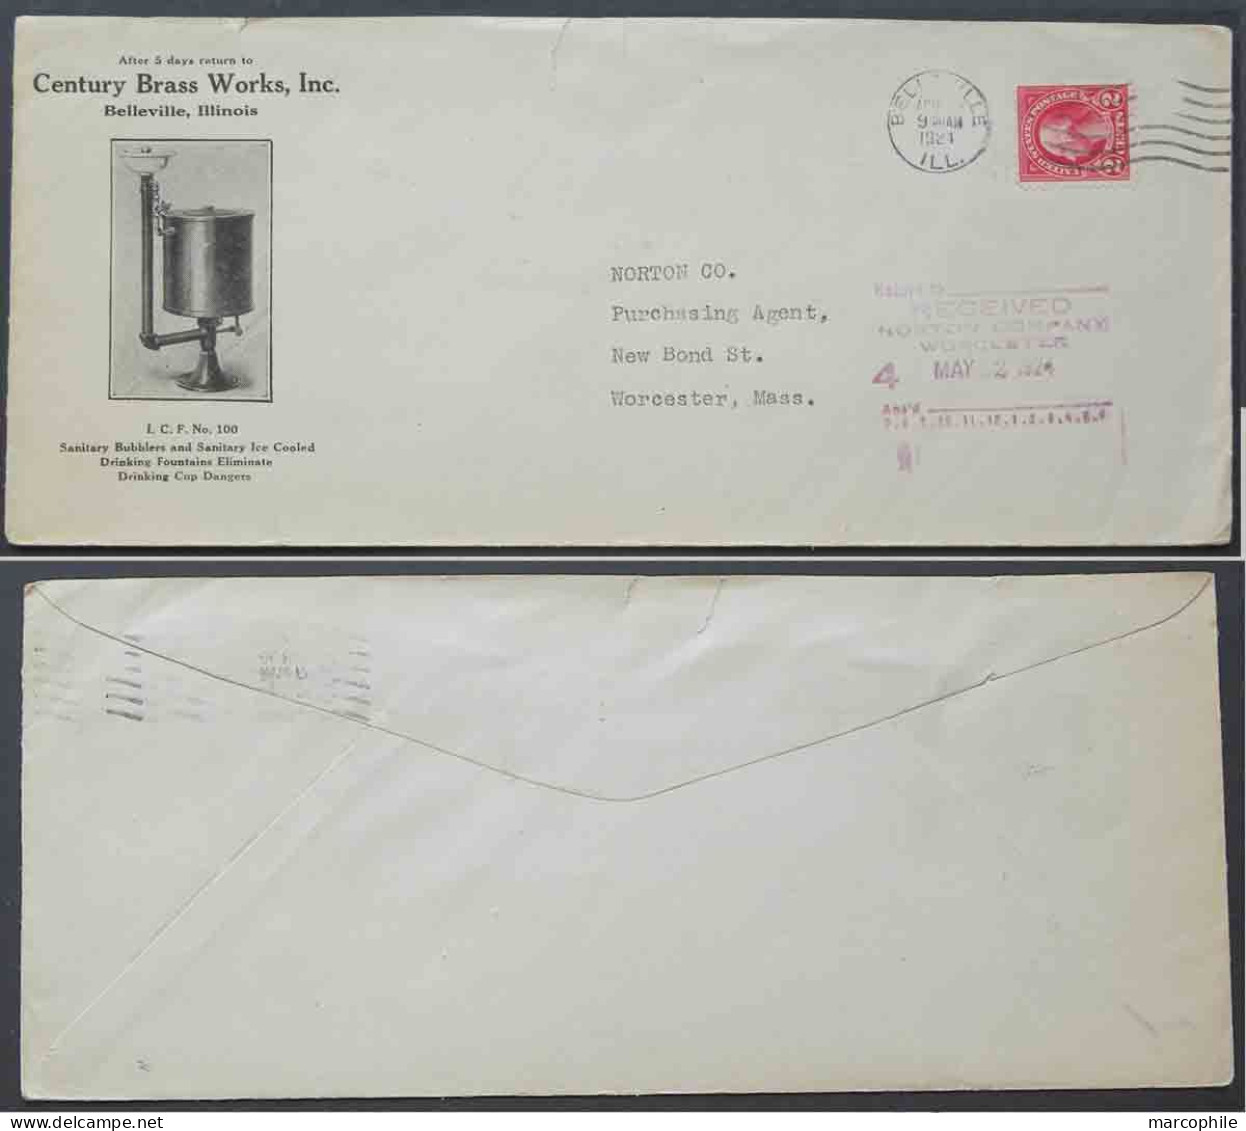 EAU - FONTAINE - LAITON / 1924 USA - BELLEVILLE ENVELOPPE COMMERCIALE ILLUSTREE (ref 4195) - Eau